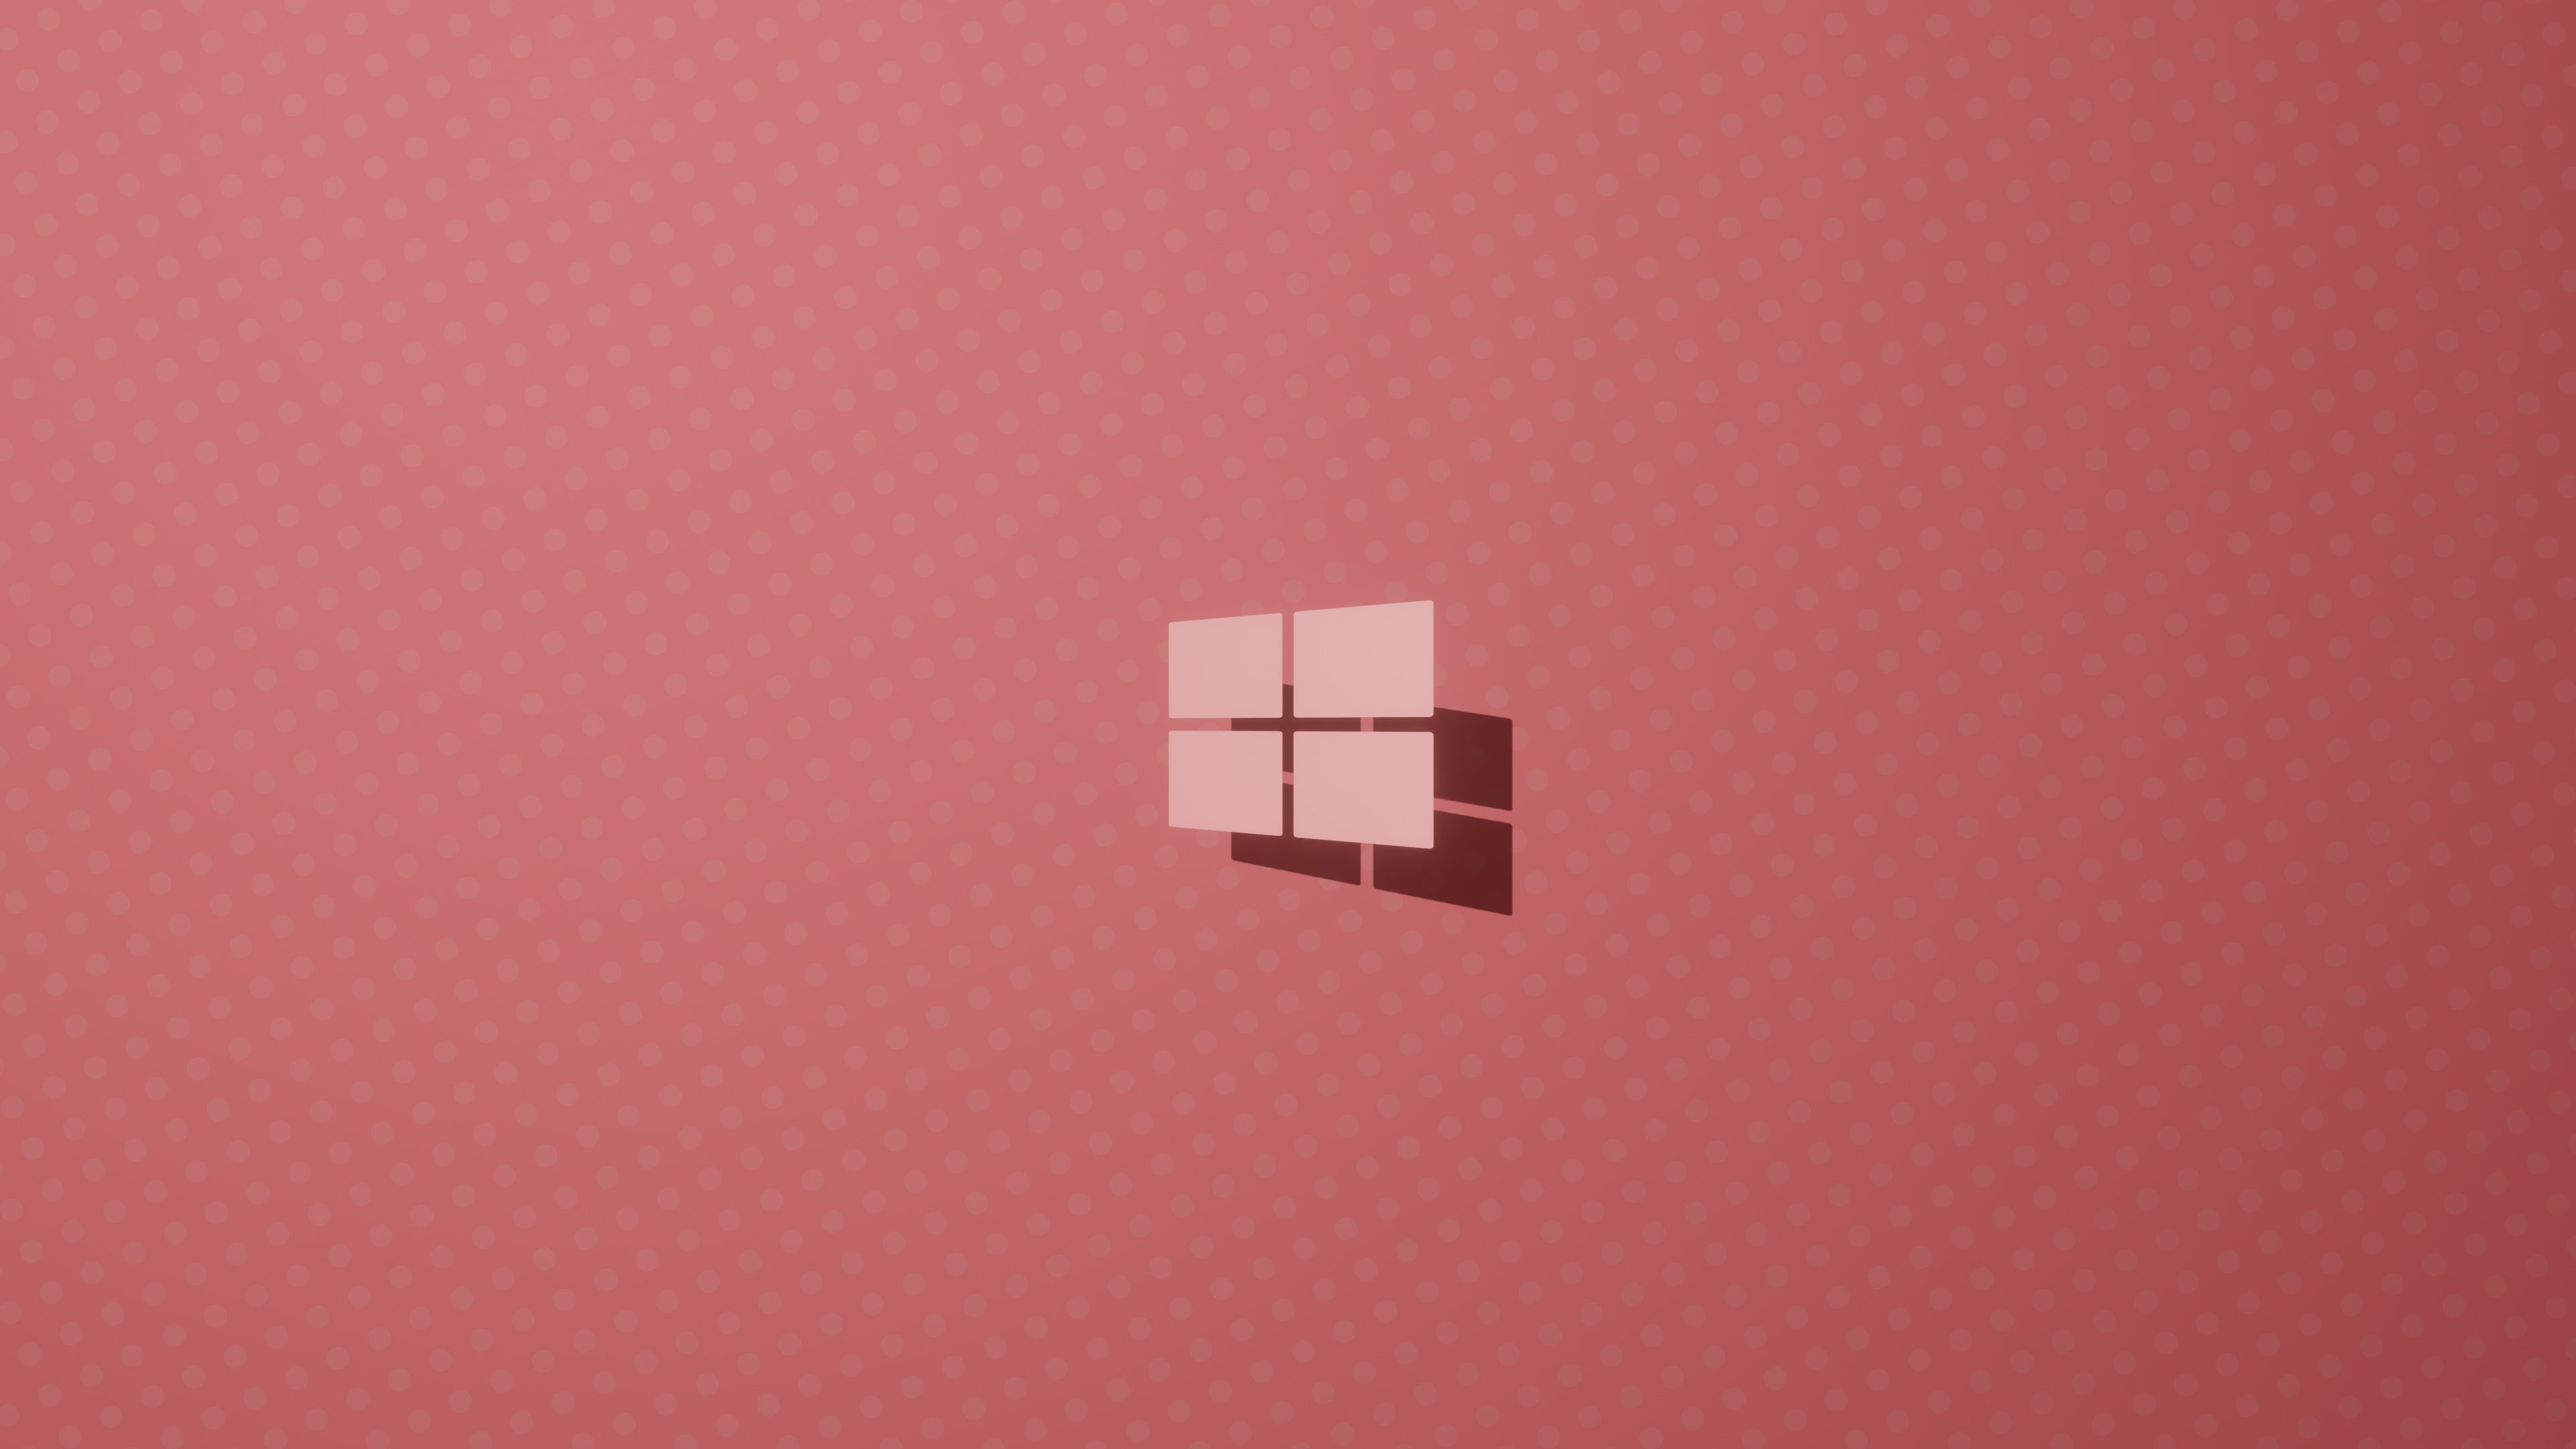 Hình nền màu hồng sang trọng của Windows 10 chỉ là một trong những ưu điểm tuyệt vời nhất của giao diện này. Nếu bạn muốn có những trải nghiệm mới mẻ,thú vị, tìm hiểu thêm về hình nền này bằng cách xem hình ảnh liên quan sẽ là sự lựa chọn hoàn hảo!